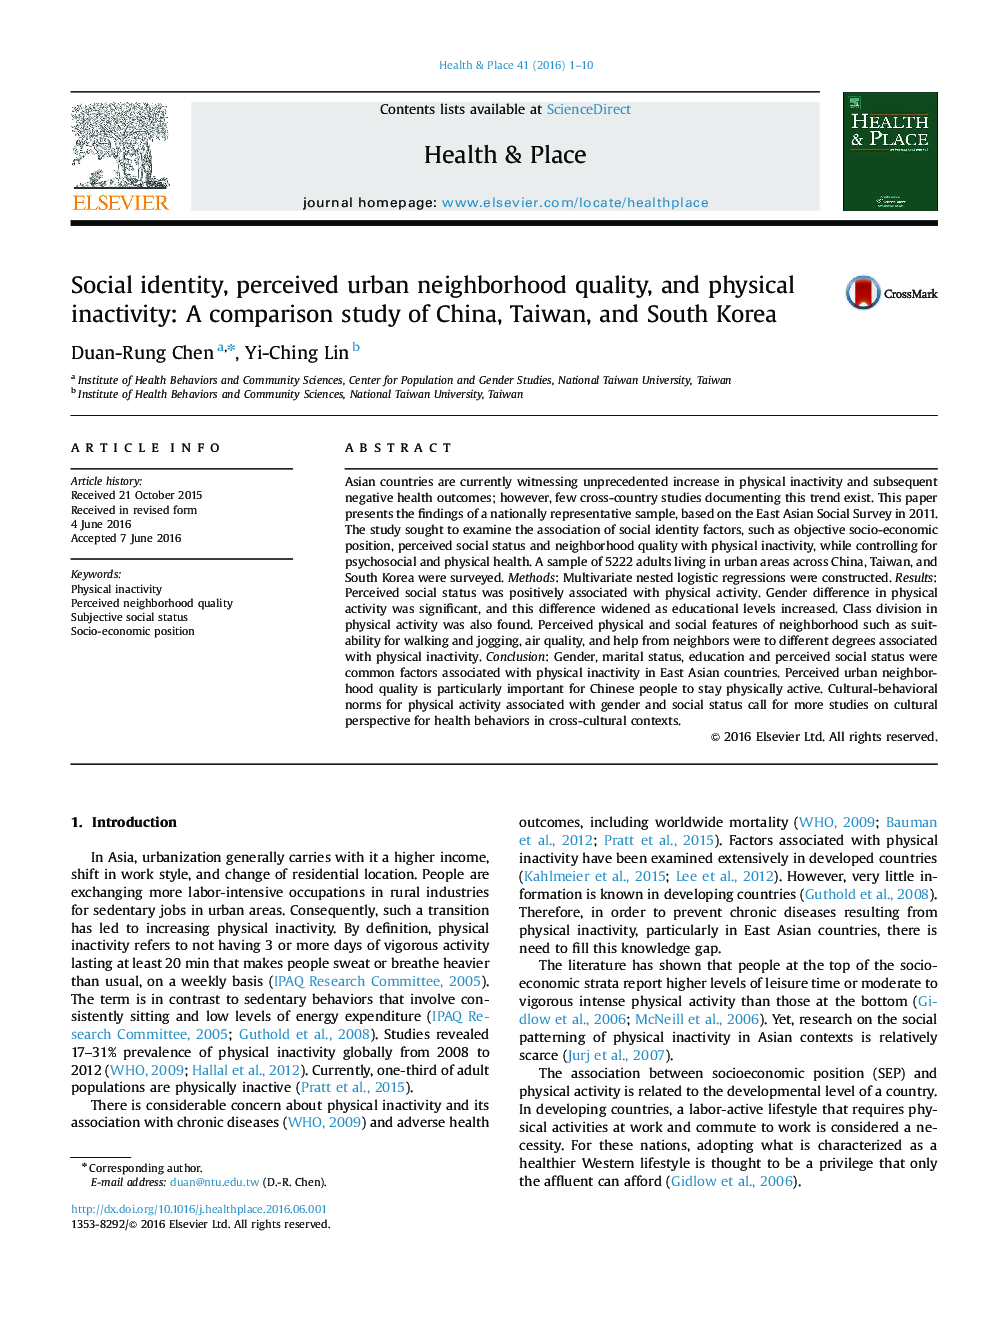 هویت اجتماعی، کیفیت محله های شهری و عدم فعالیت فیزیکی: مطالعه مقایسه چین، تایوان و کره جنوبی